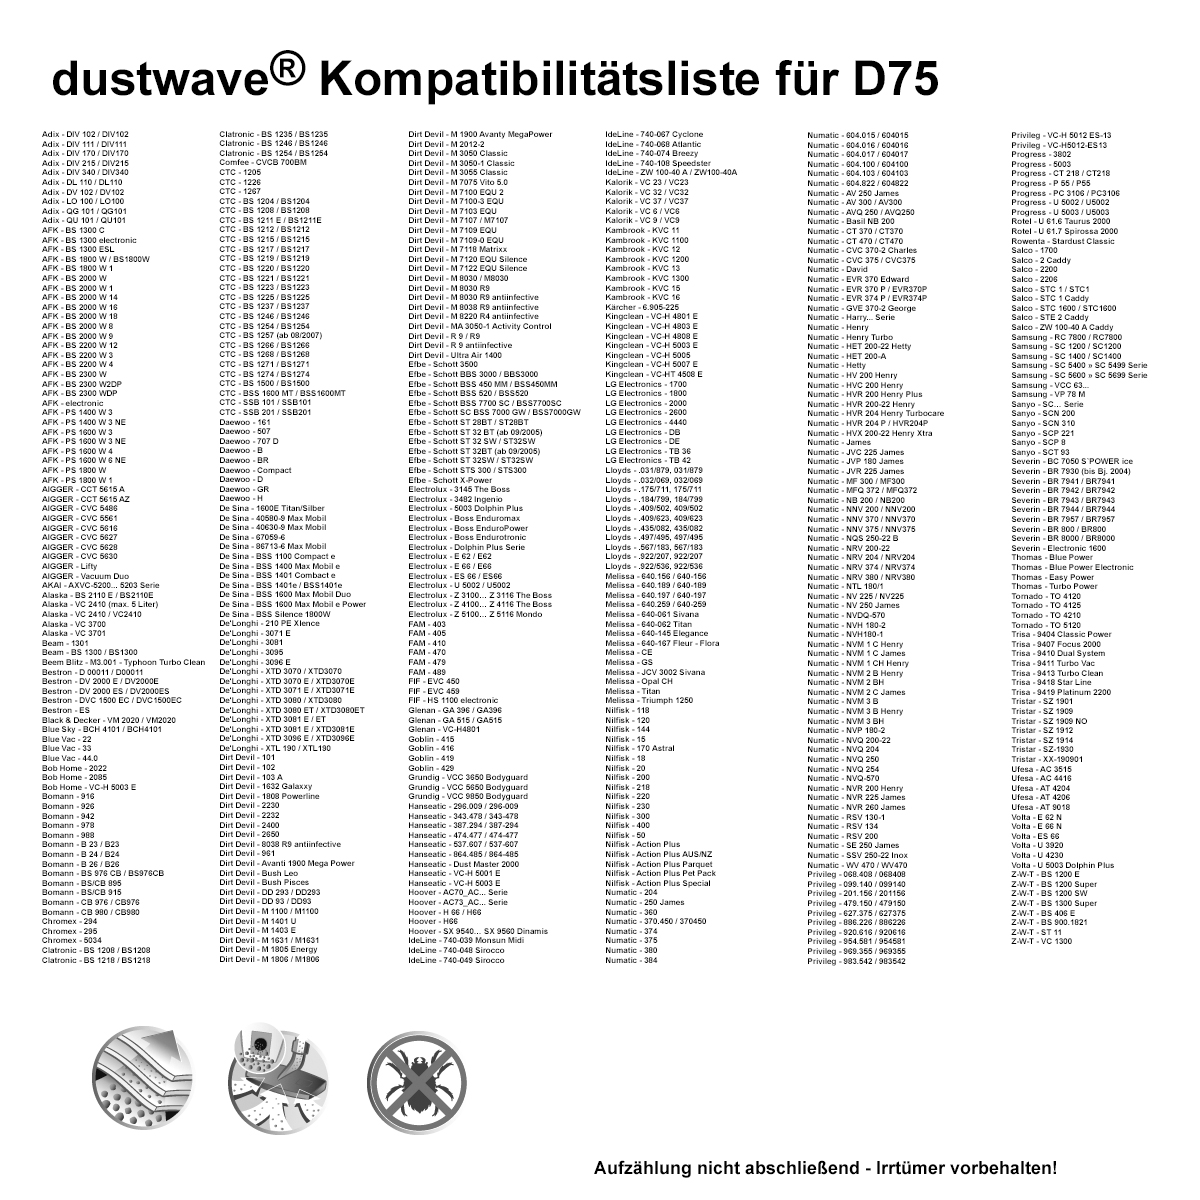 Dustwave® 1 Staubsaugerbeutel für Clean-Maxx VC-H 5003 - hocheffizient mit Hygieneverschluss - Made in Germany